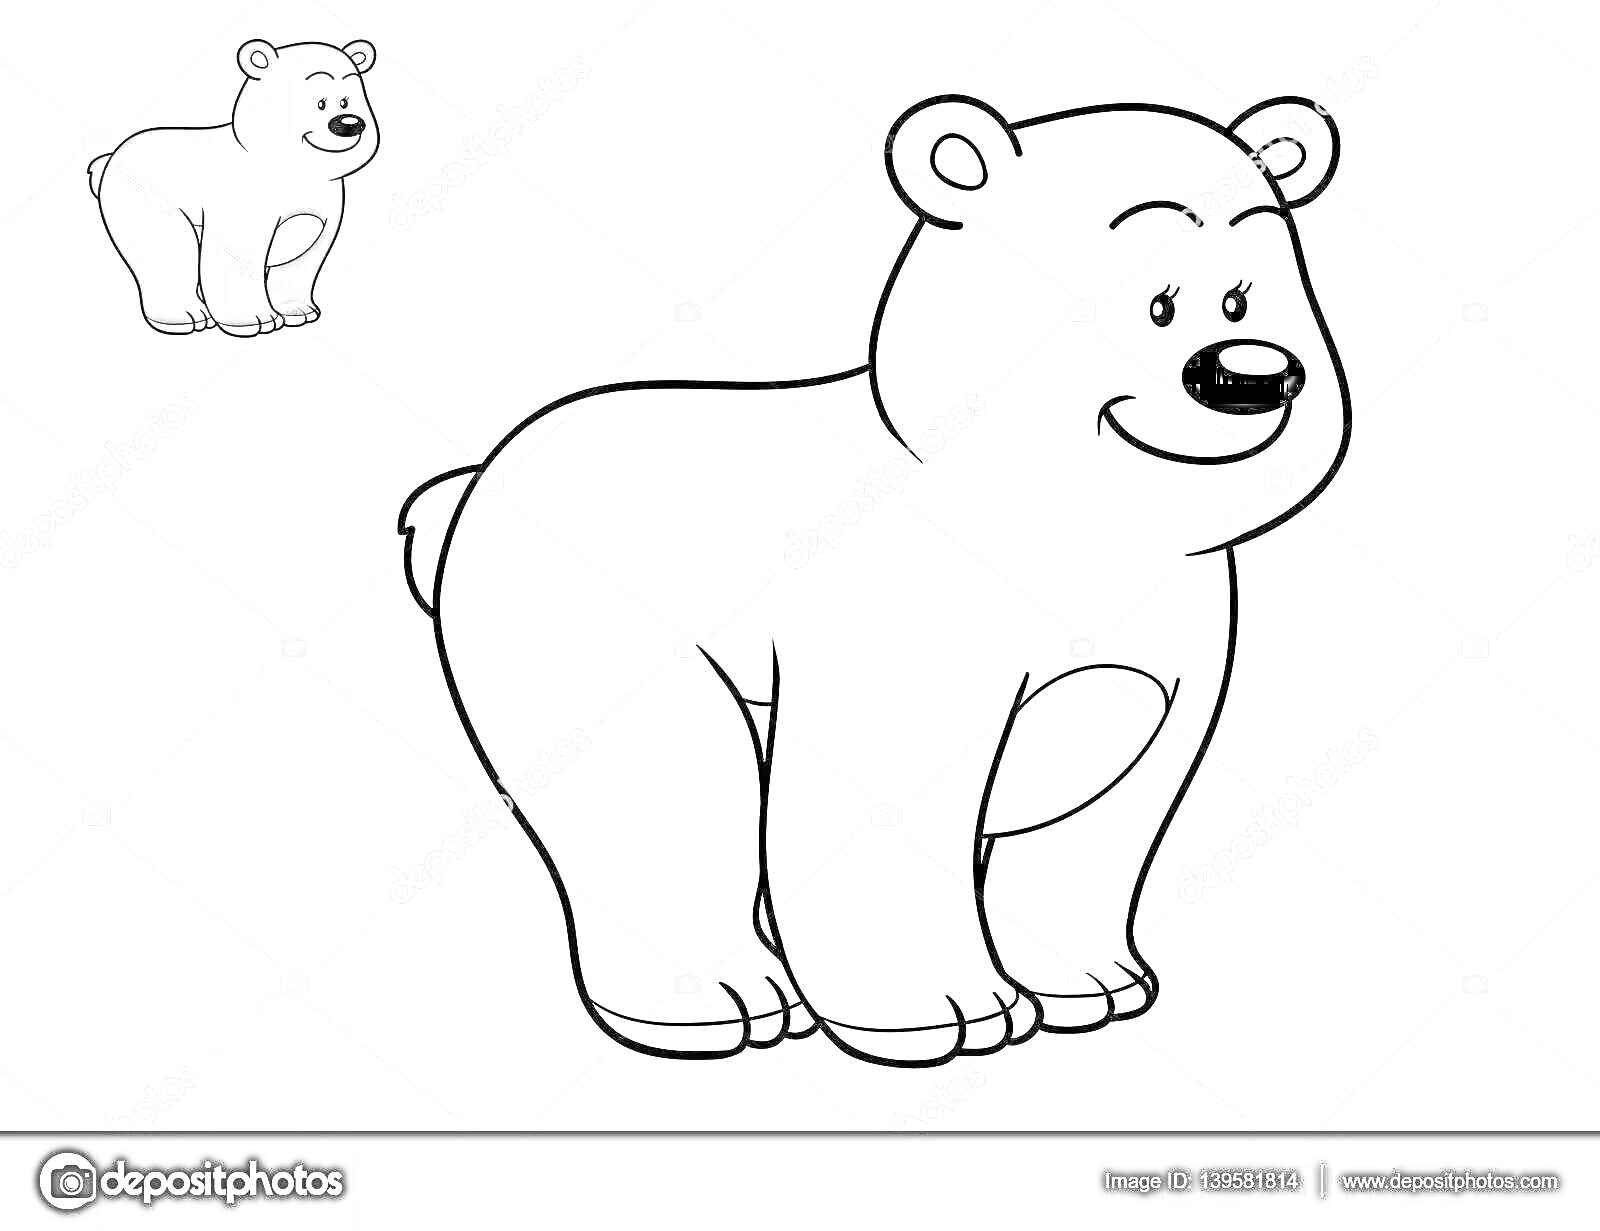 Раскраска Раскраска белого медведя с примером раскрашенного медведя в левом верхнем углу